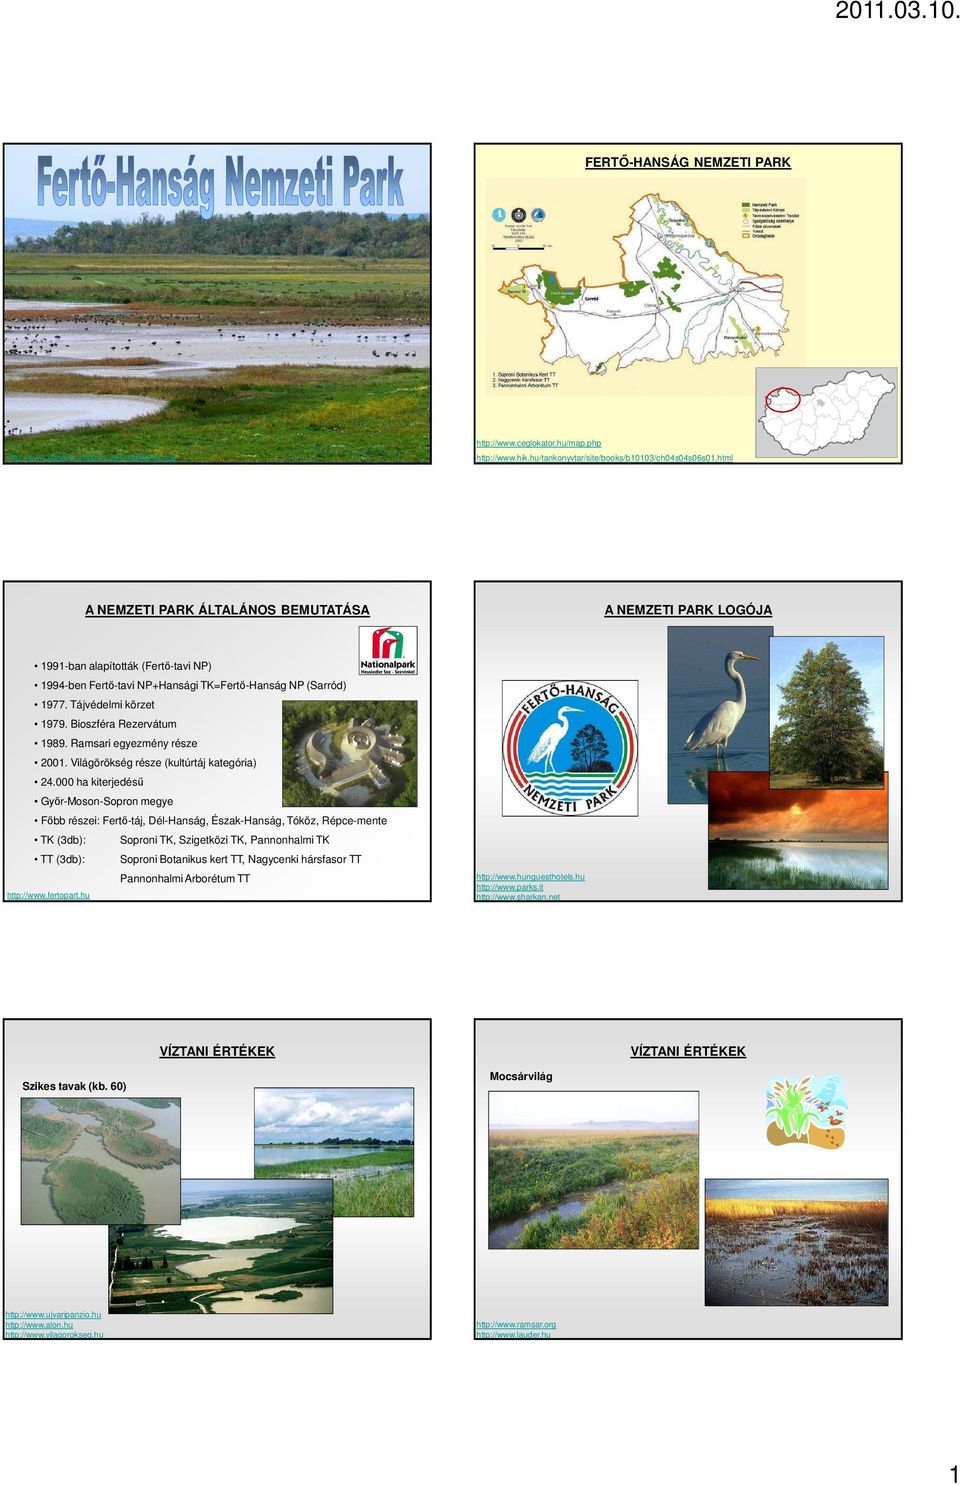 Bioszféra Rezervátum 1989. Ramsari egyezmény része 2001. Világörökség része (kultúrtáj kategória) 24.